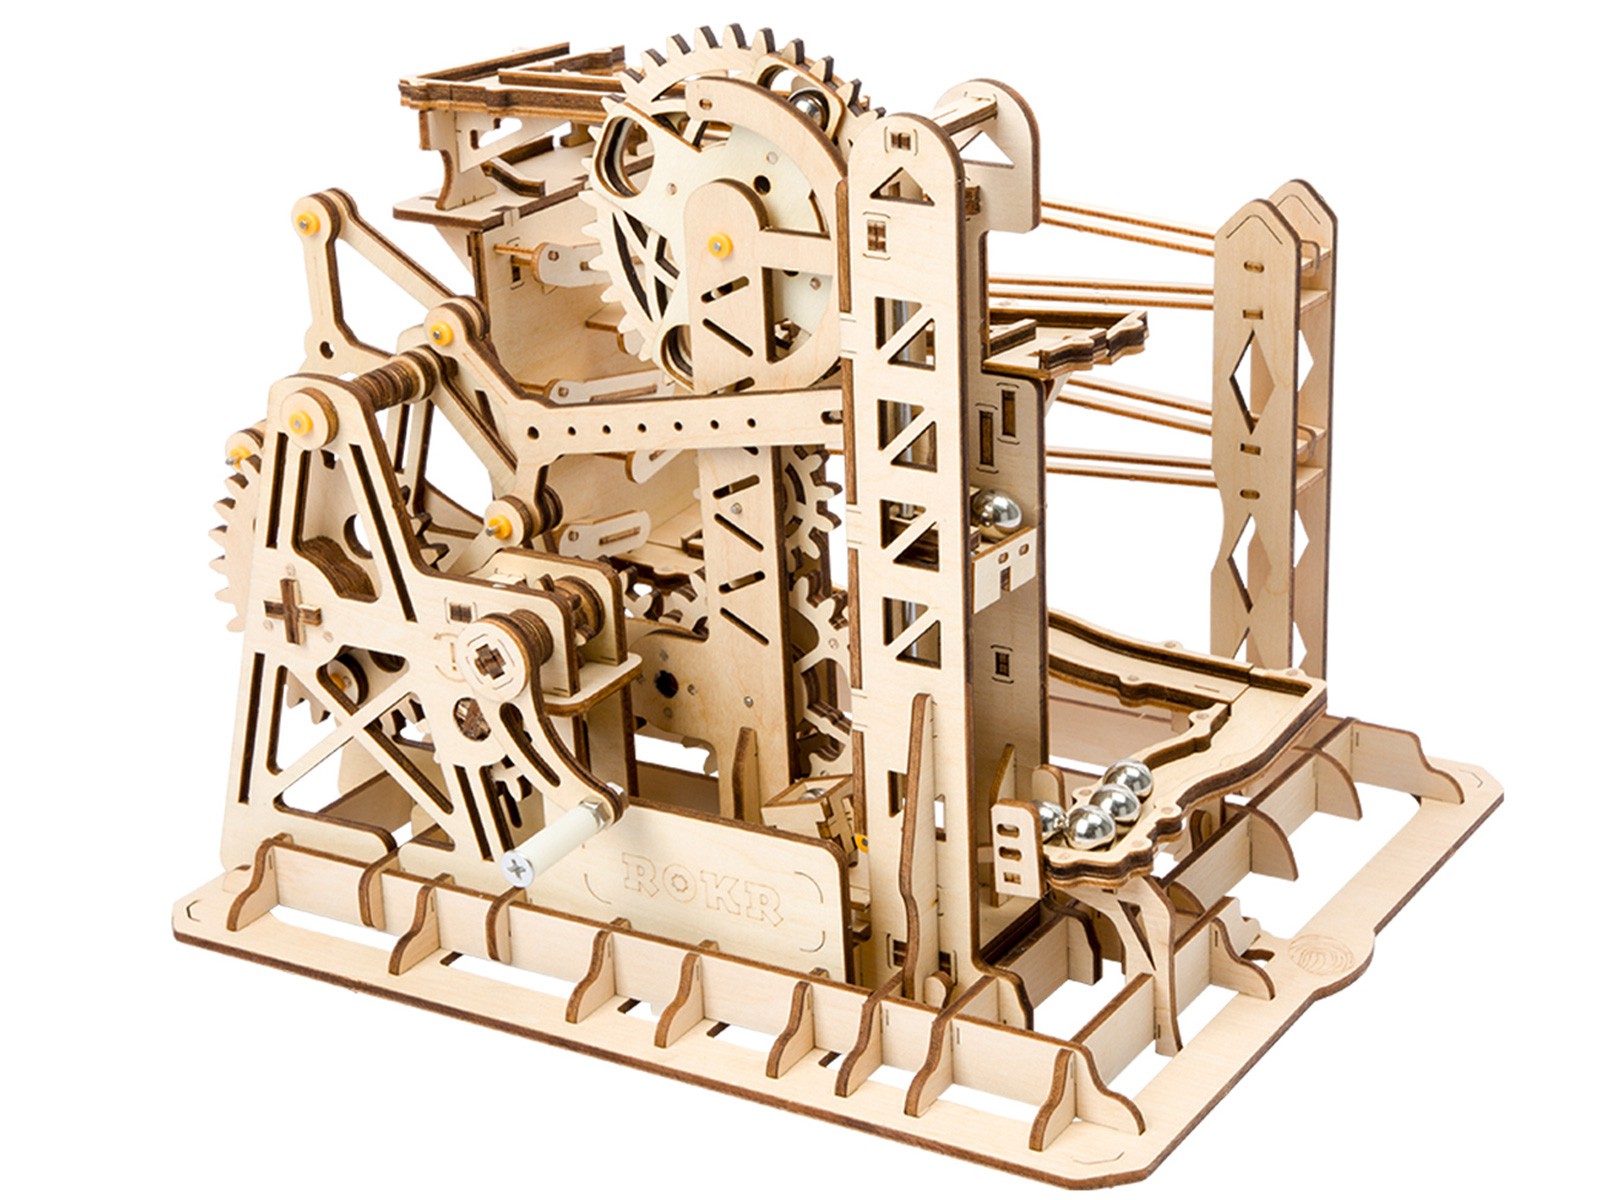 Marblerun 3D Puzzle Wood Lift - Robotime ROKR LG503